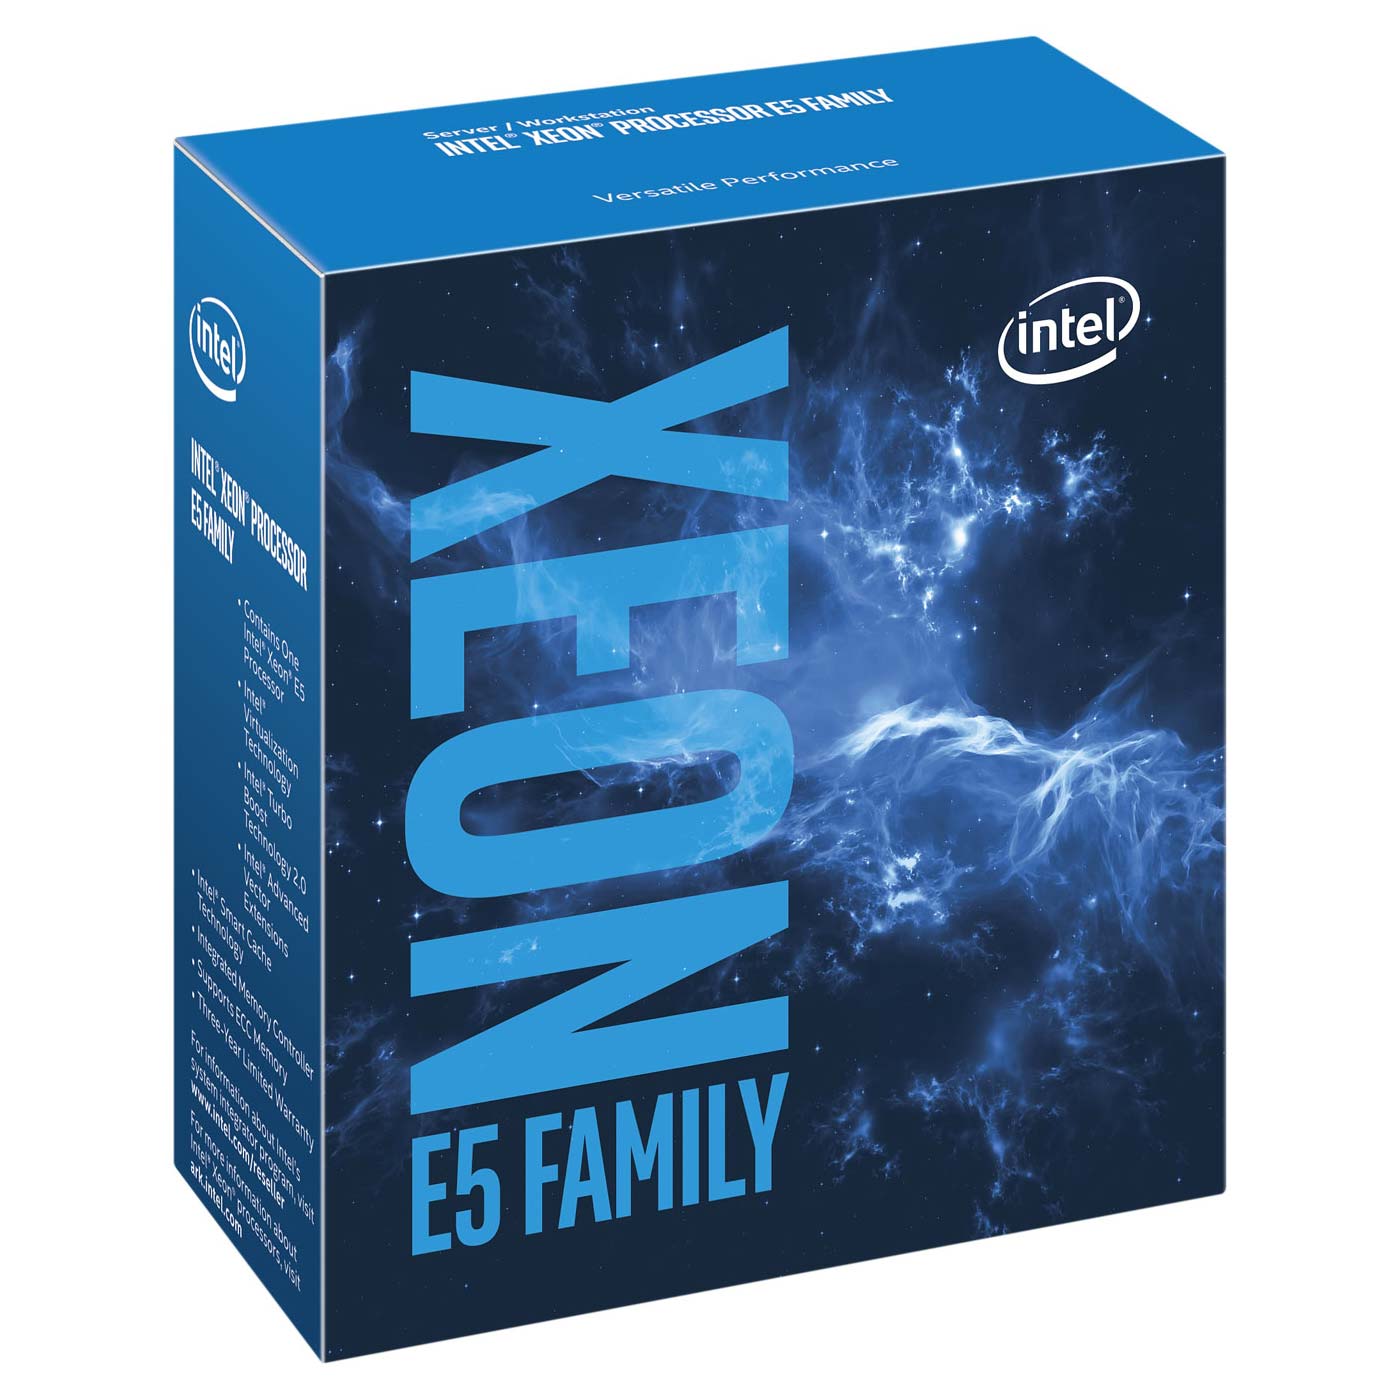 Xeon E5-2620 v4 (2.1 GHz)